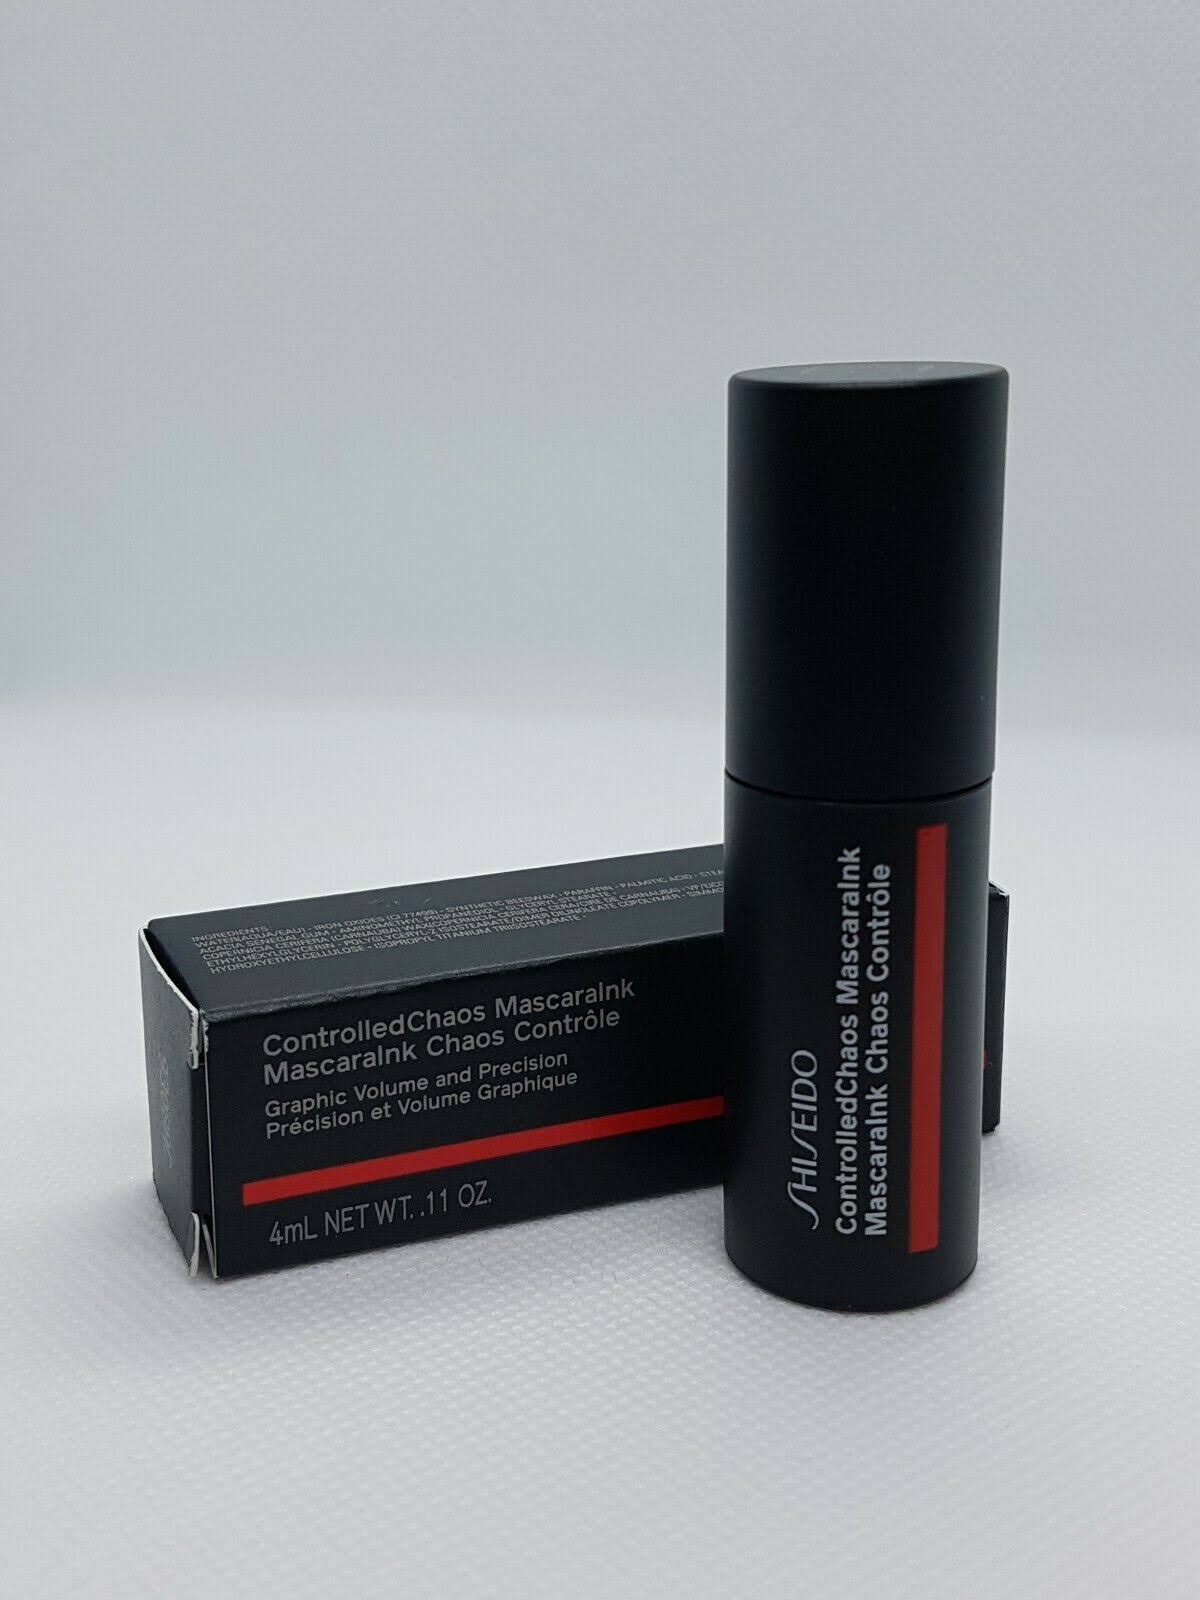 Shiseido ControlledChaos MascaraInk Eye Mascara 01 Black Pulse 4ml